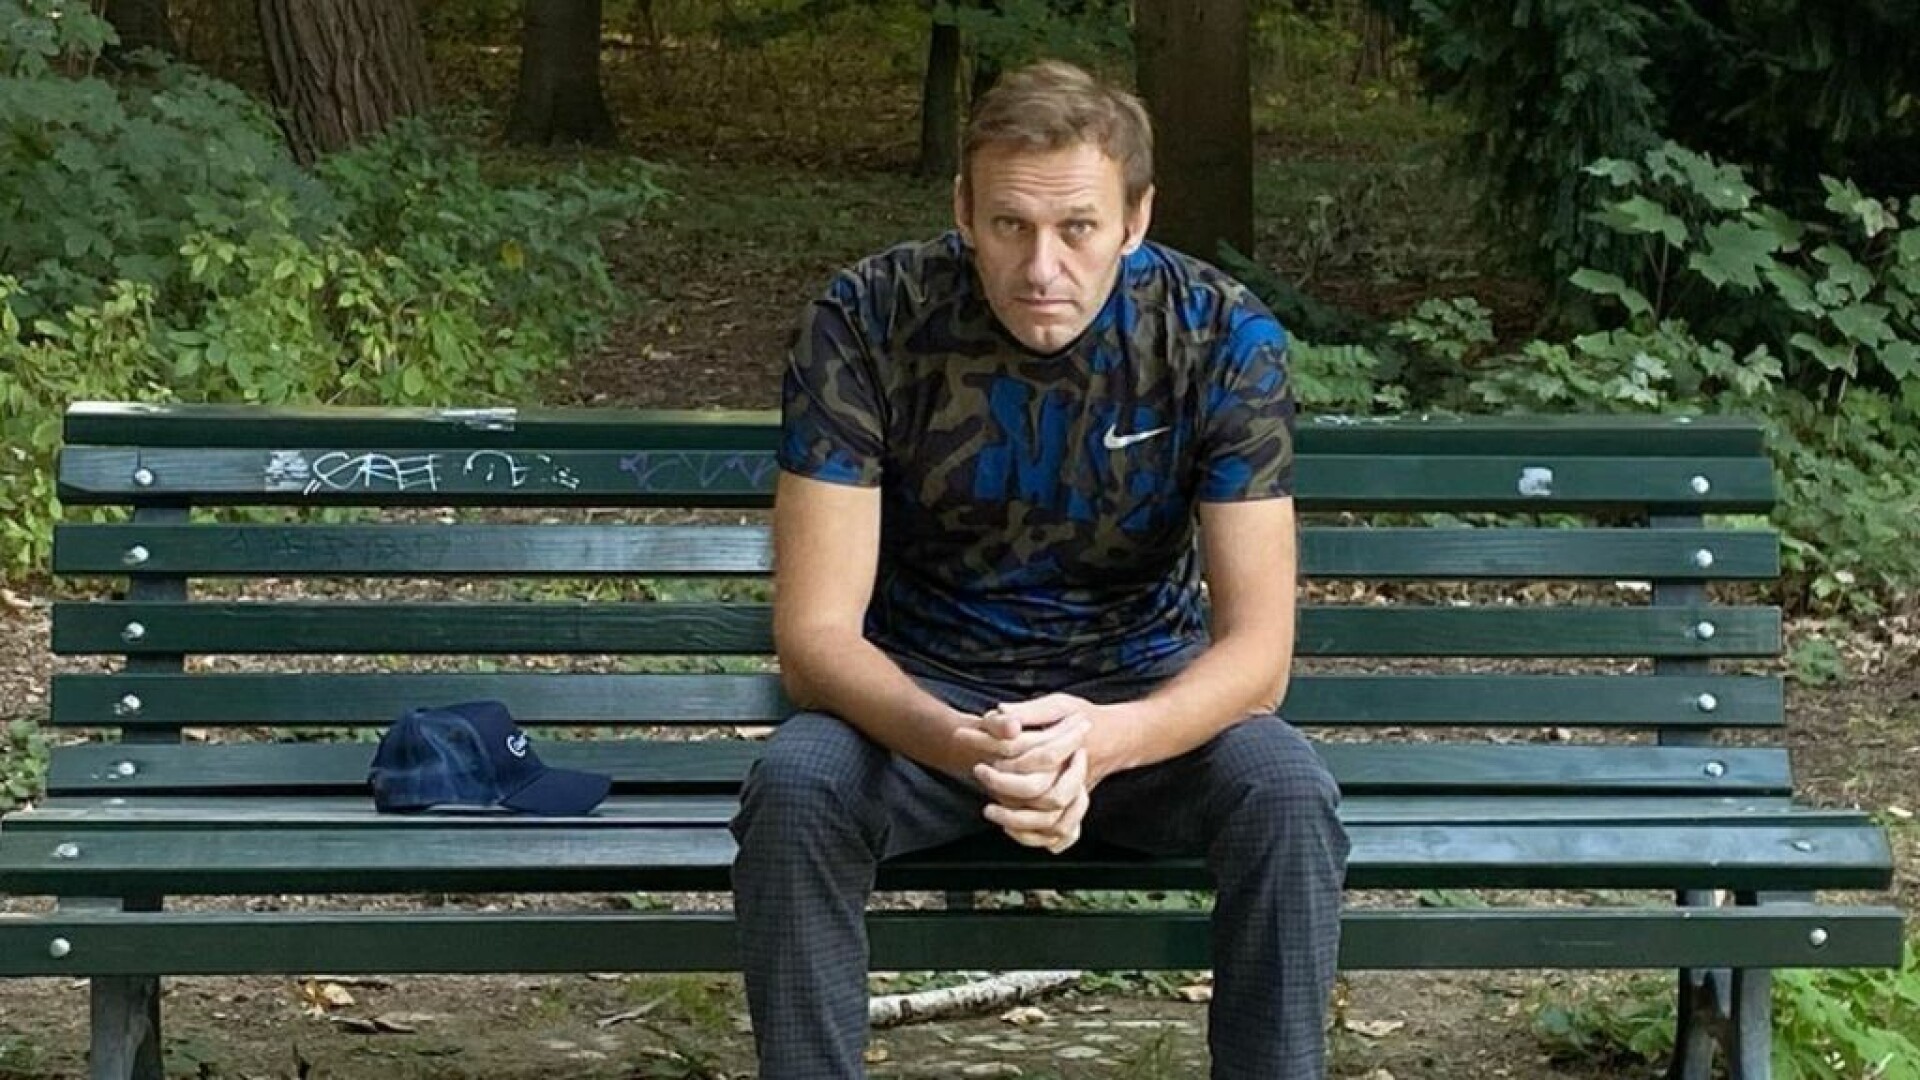 Aleksei Navalnîi îl acuză direct pe Vladimir Putin de otrăvirea sa. ”Nu mi-e frică de nimic!”